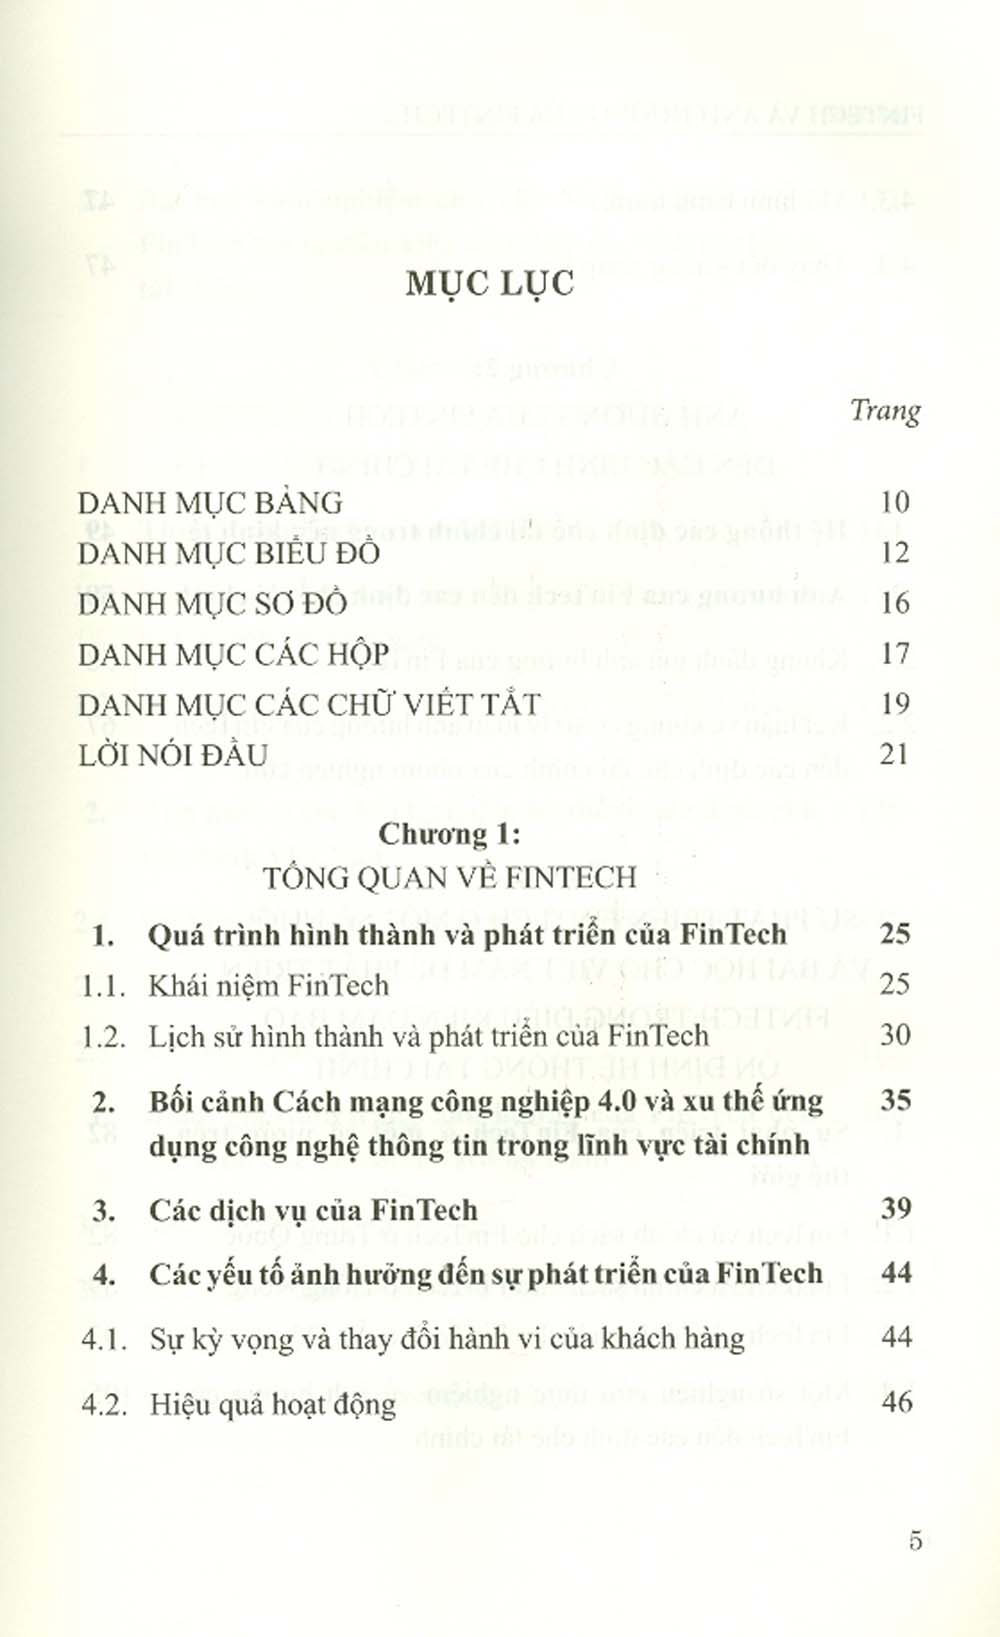 Fintech & Ảnh Hưởng Của Fintech Đến Các Định Chế Tài Chính Ở Việt Nam (Sách Chuyên Khảo)